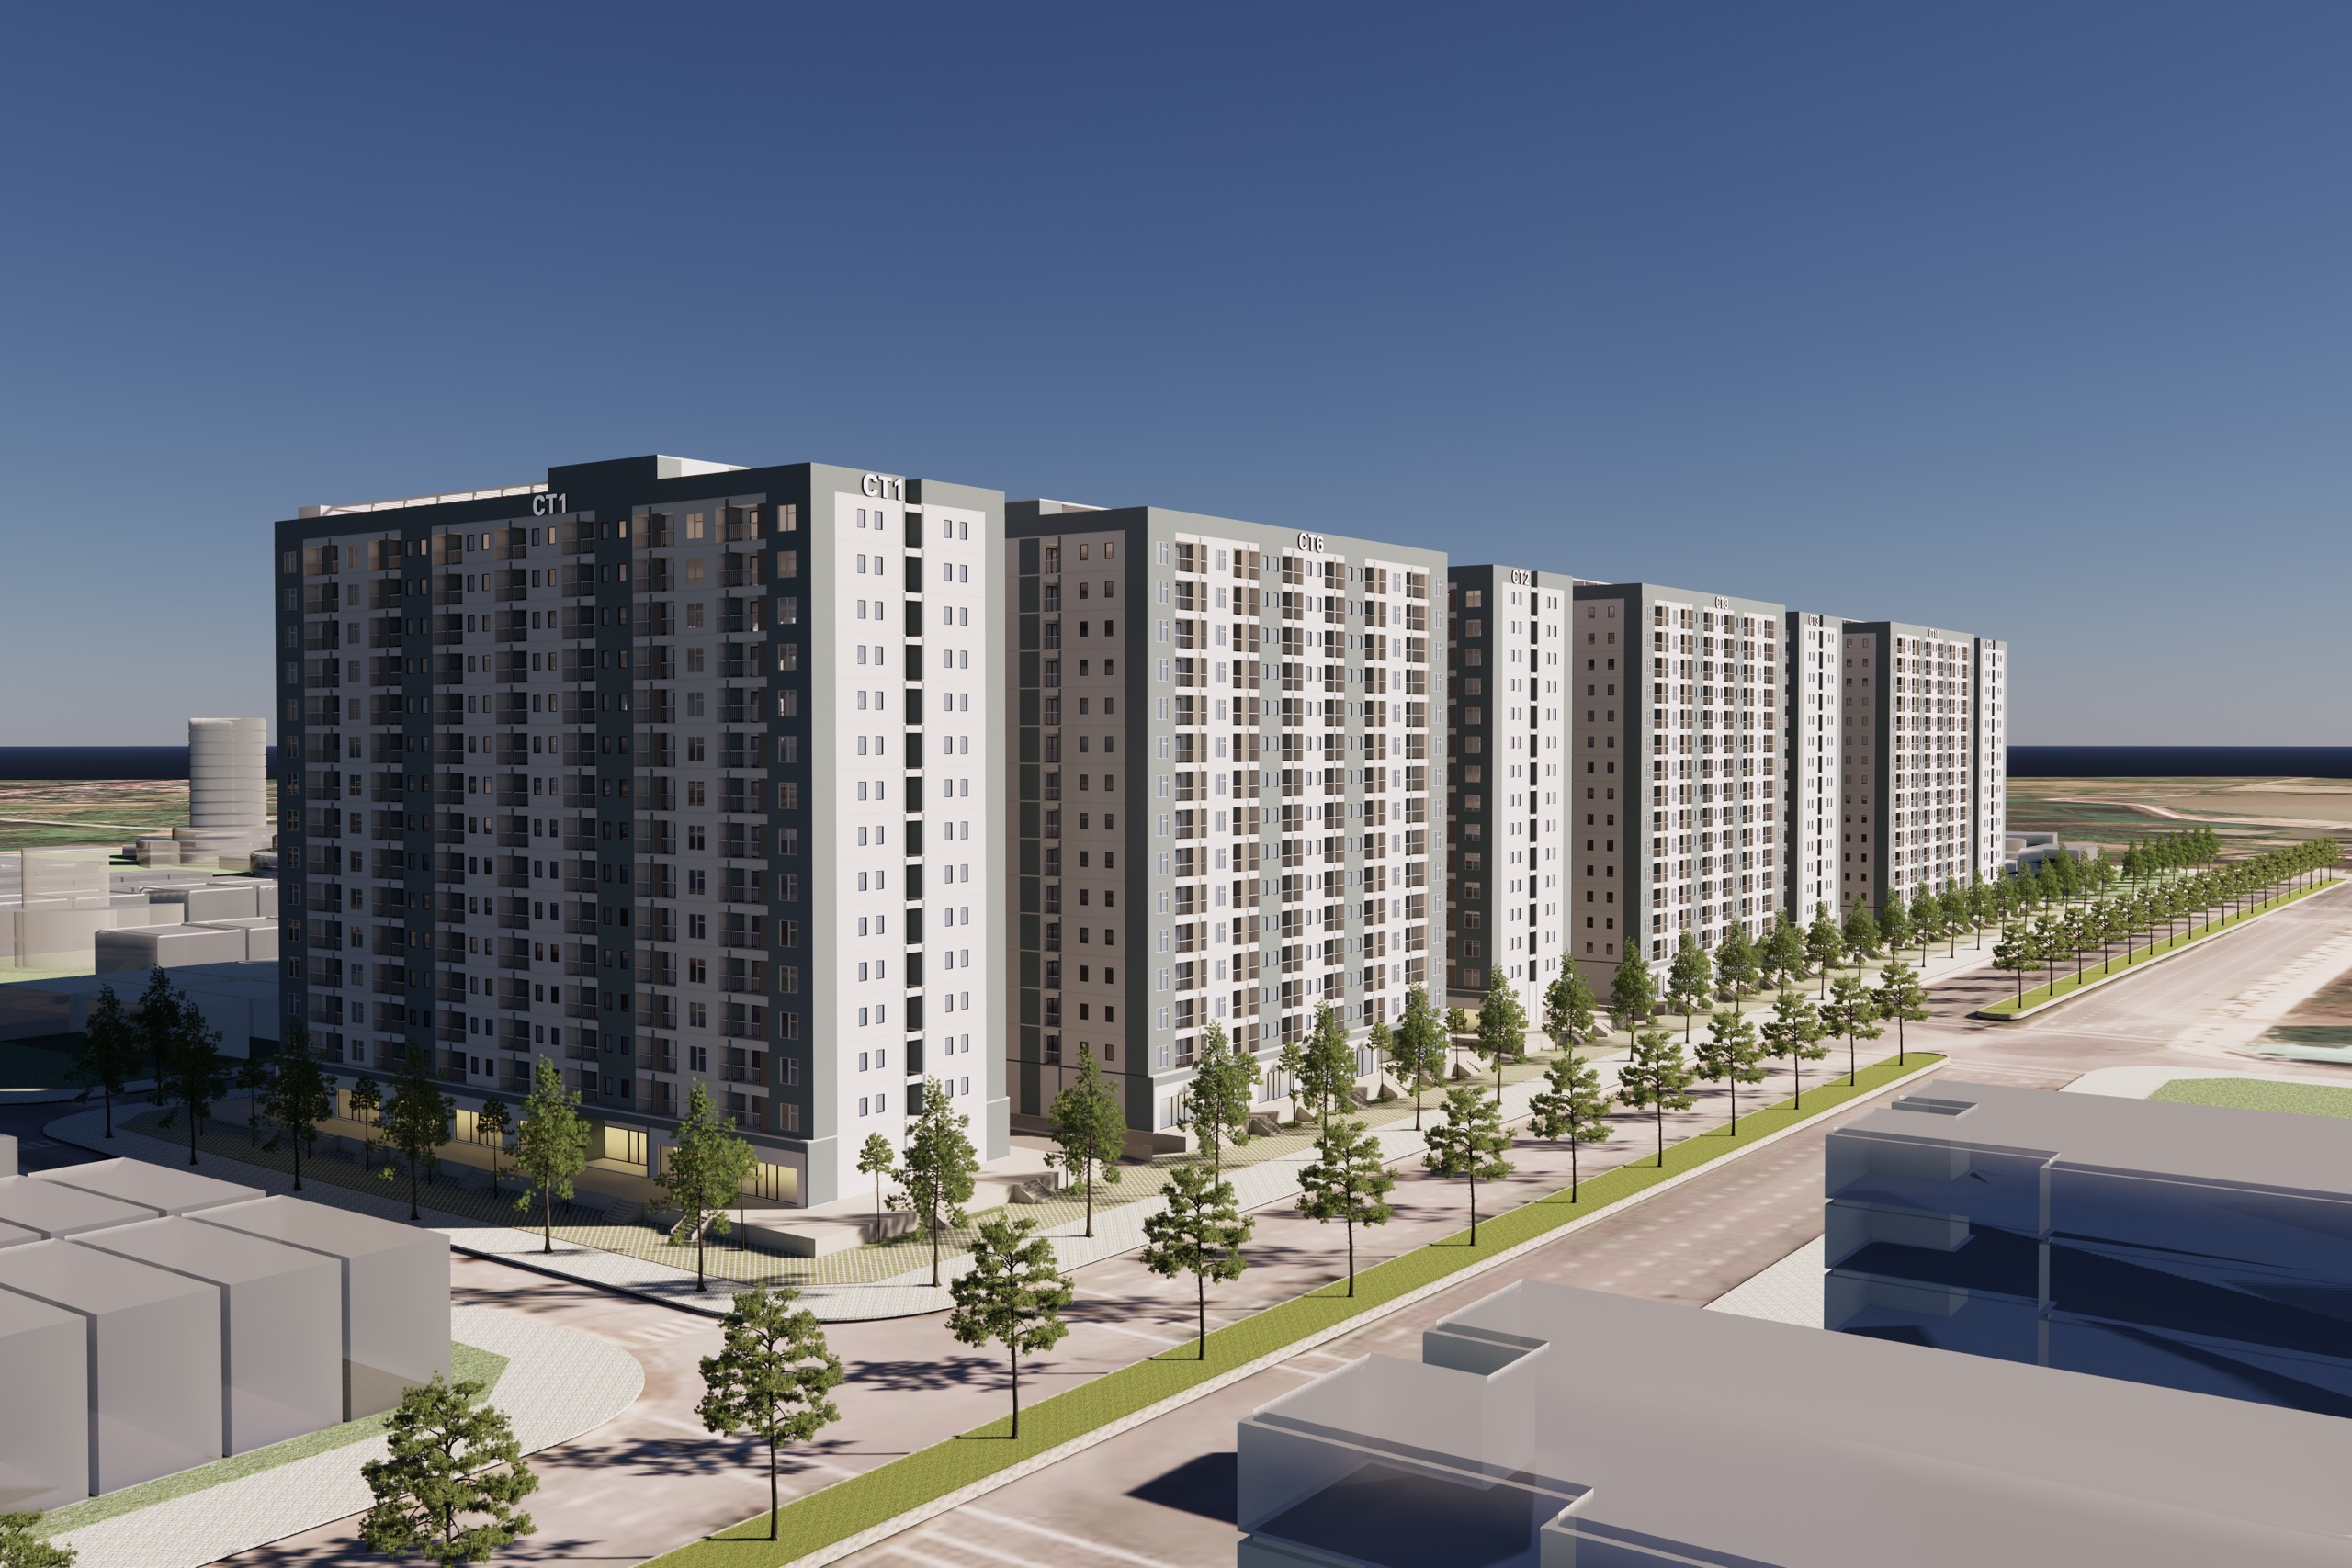 Dự án bao gồm 10 toà nhà chung cư cao 15 tầng với quy mô 2538 căn hộ; quy mô dân số 9.137 người.